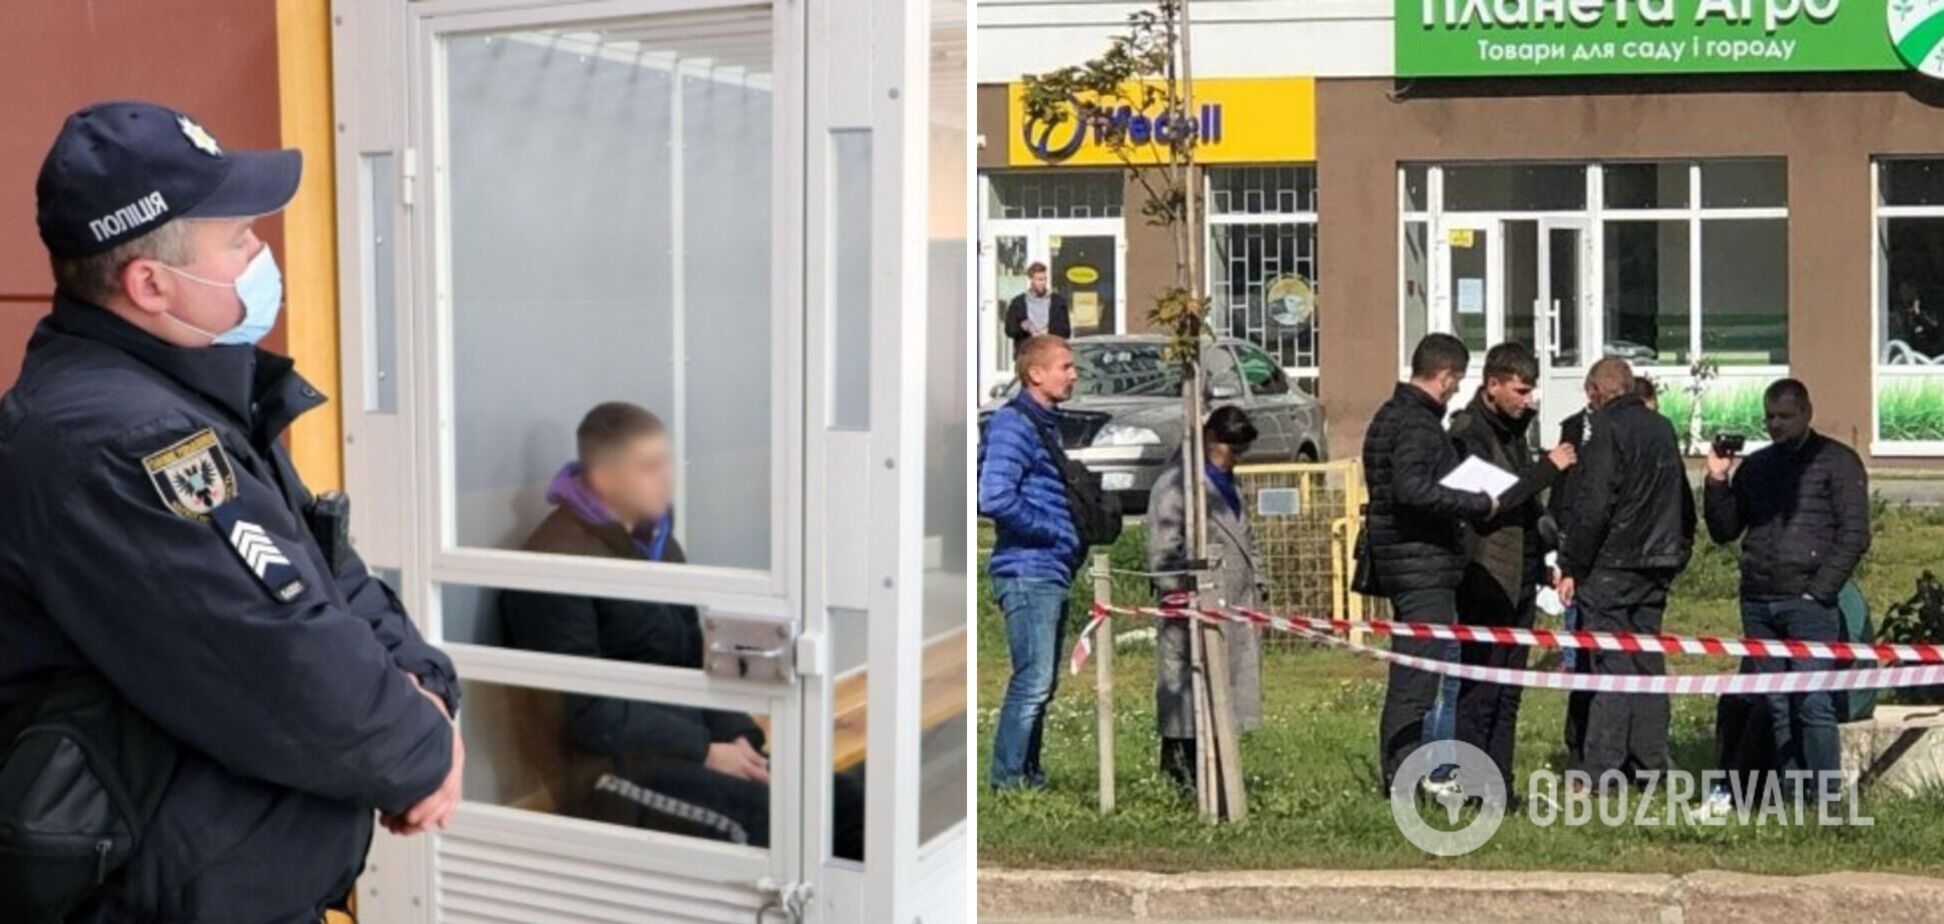 Конфликт начался на улице: обнародована хронология смертельного избиения полицейского в Чернигове. Видео